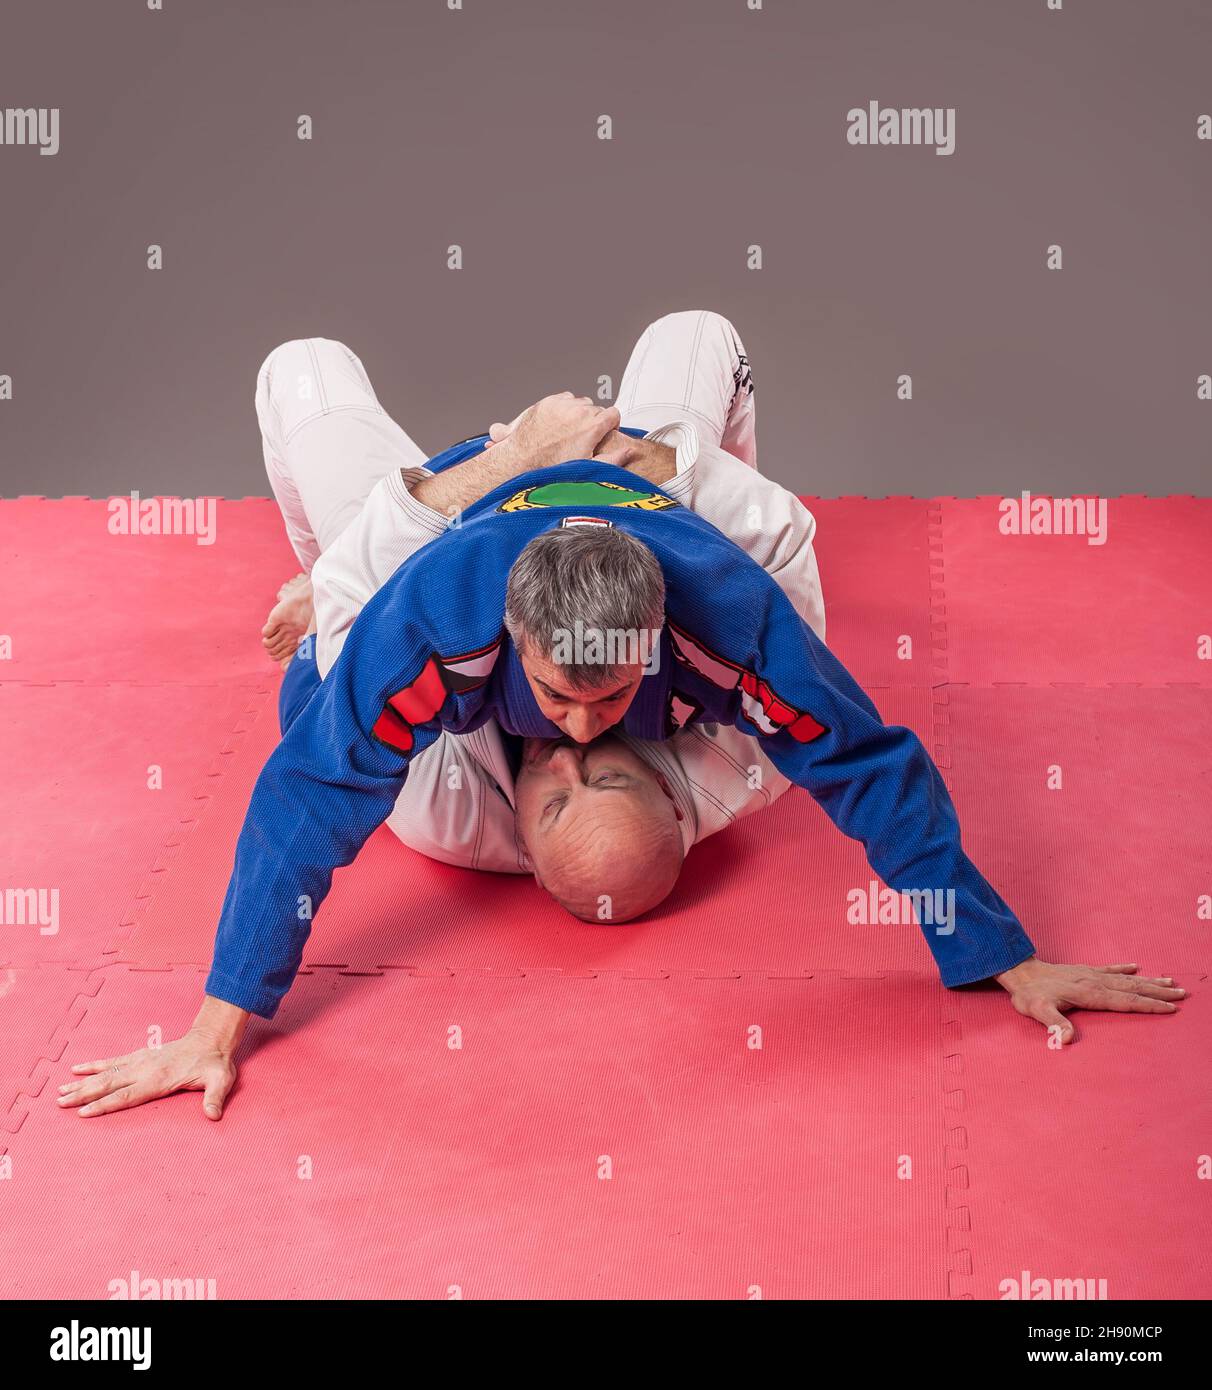 Kapap et instructeur brésilien de jiu-jitsu dans le kimono traditionnel montrer la position de montage au sol Banque D'Images